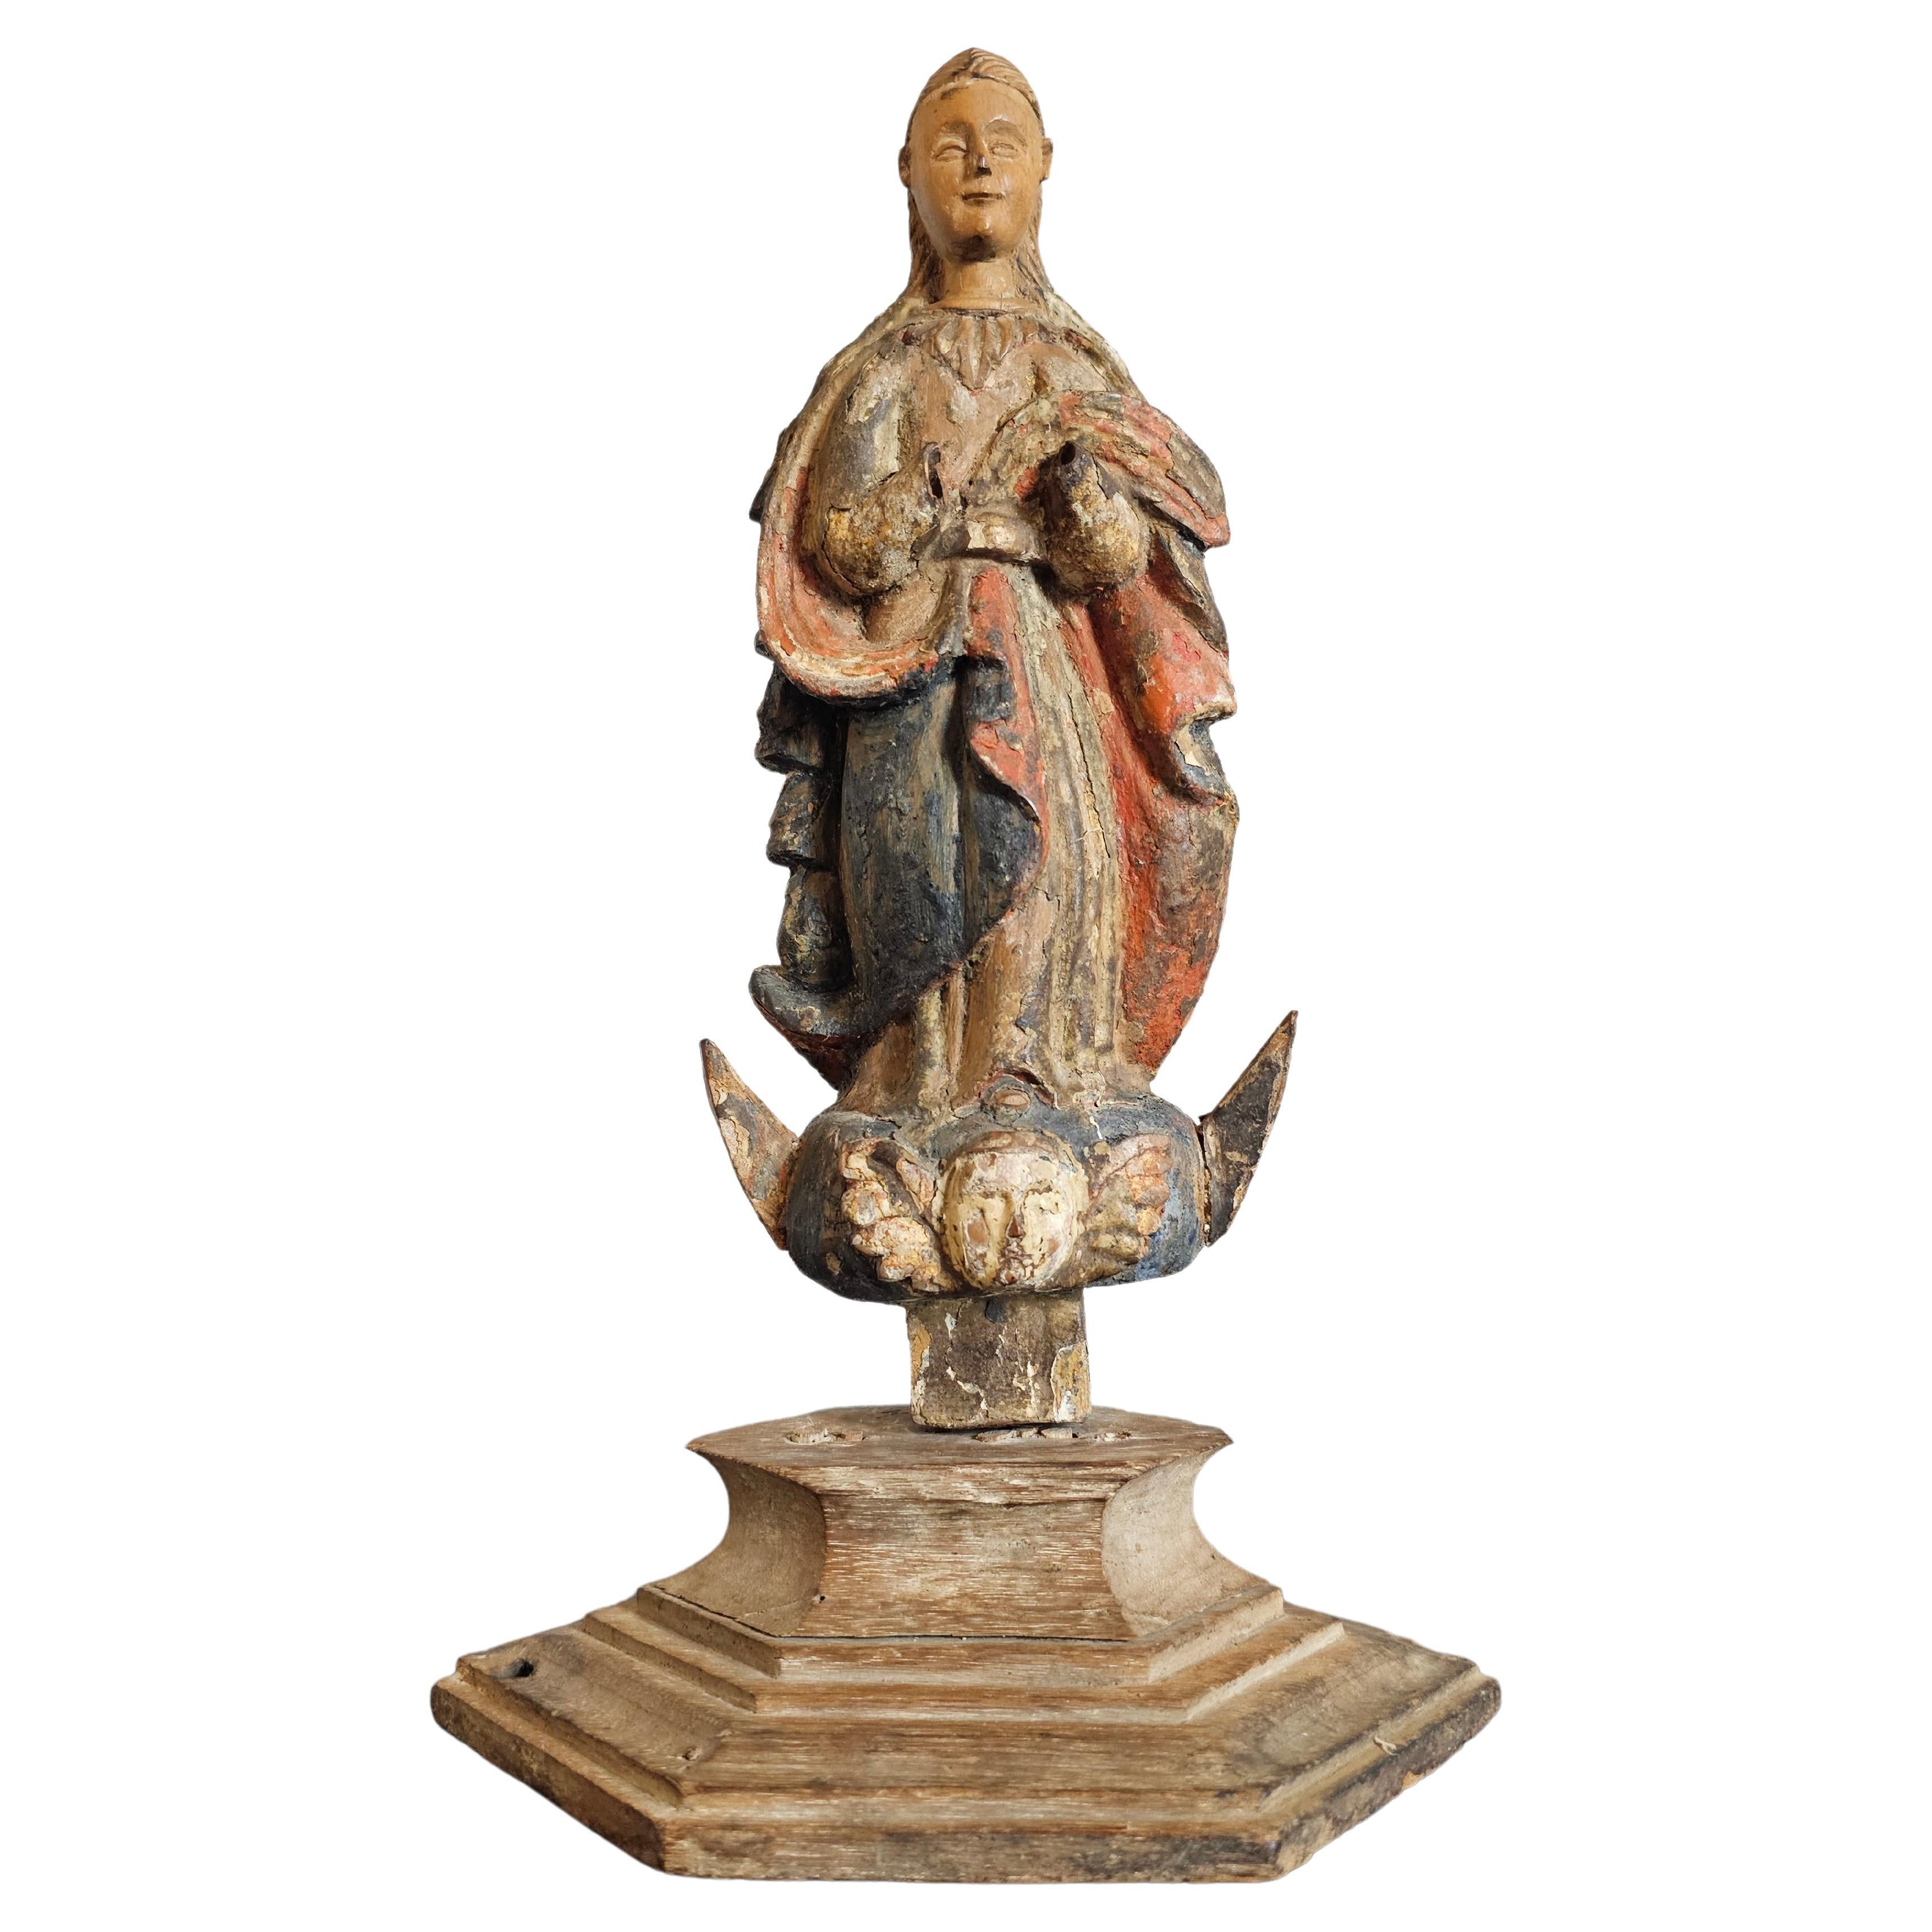 Figure d'autel Sainte-Espagne polychrome sculptée d'époque baroque européenne 